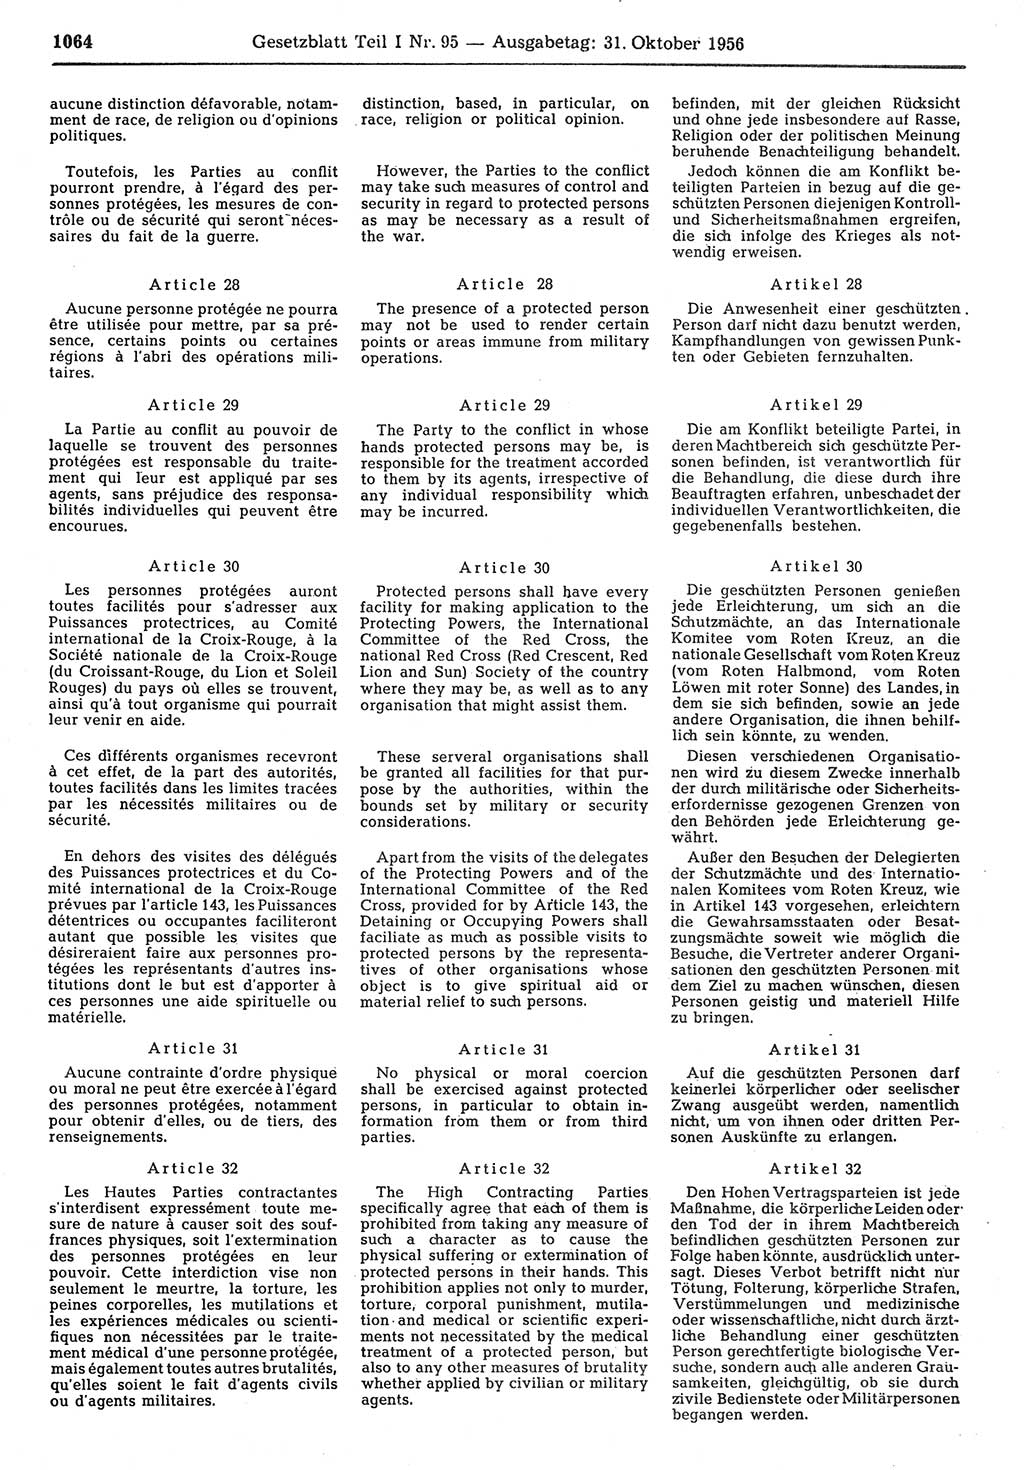 Gesetzblatt (GBl.) der Deutschen Demokratischen Republik (DDR) Teil Ⅰ 1956, Seite 1064 (GBl. DDR Ⅰ 1956, S. 1064)